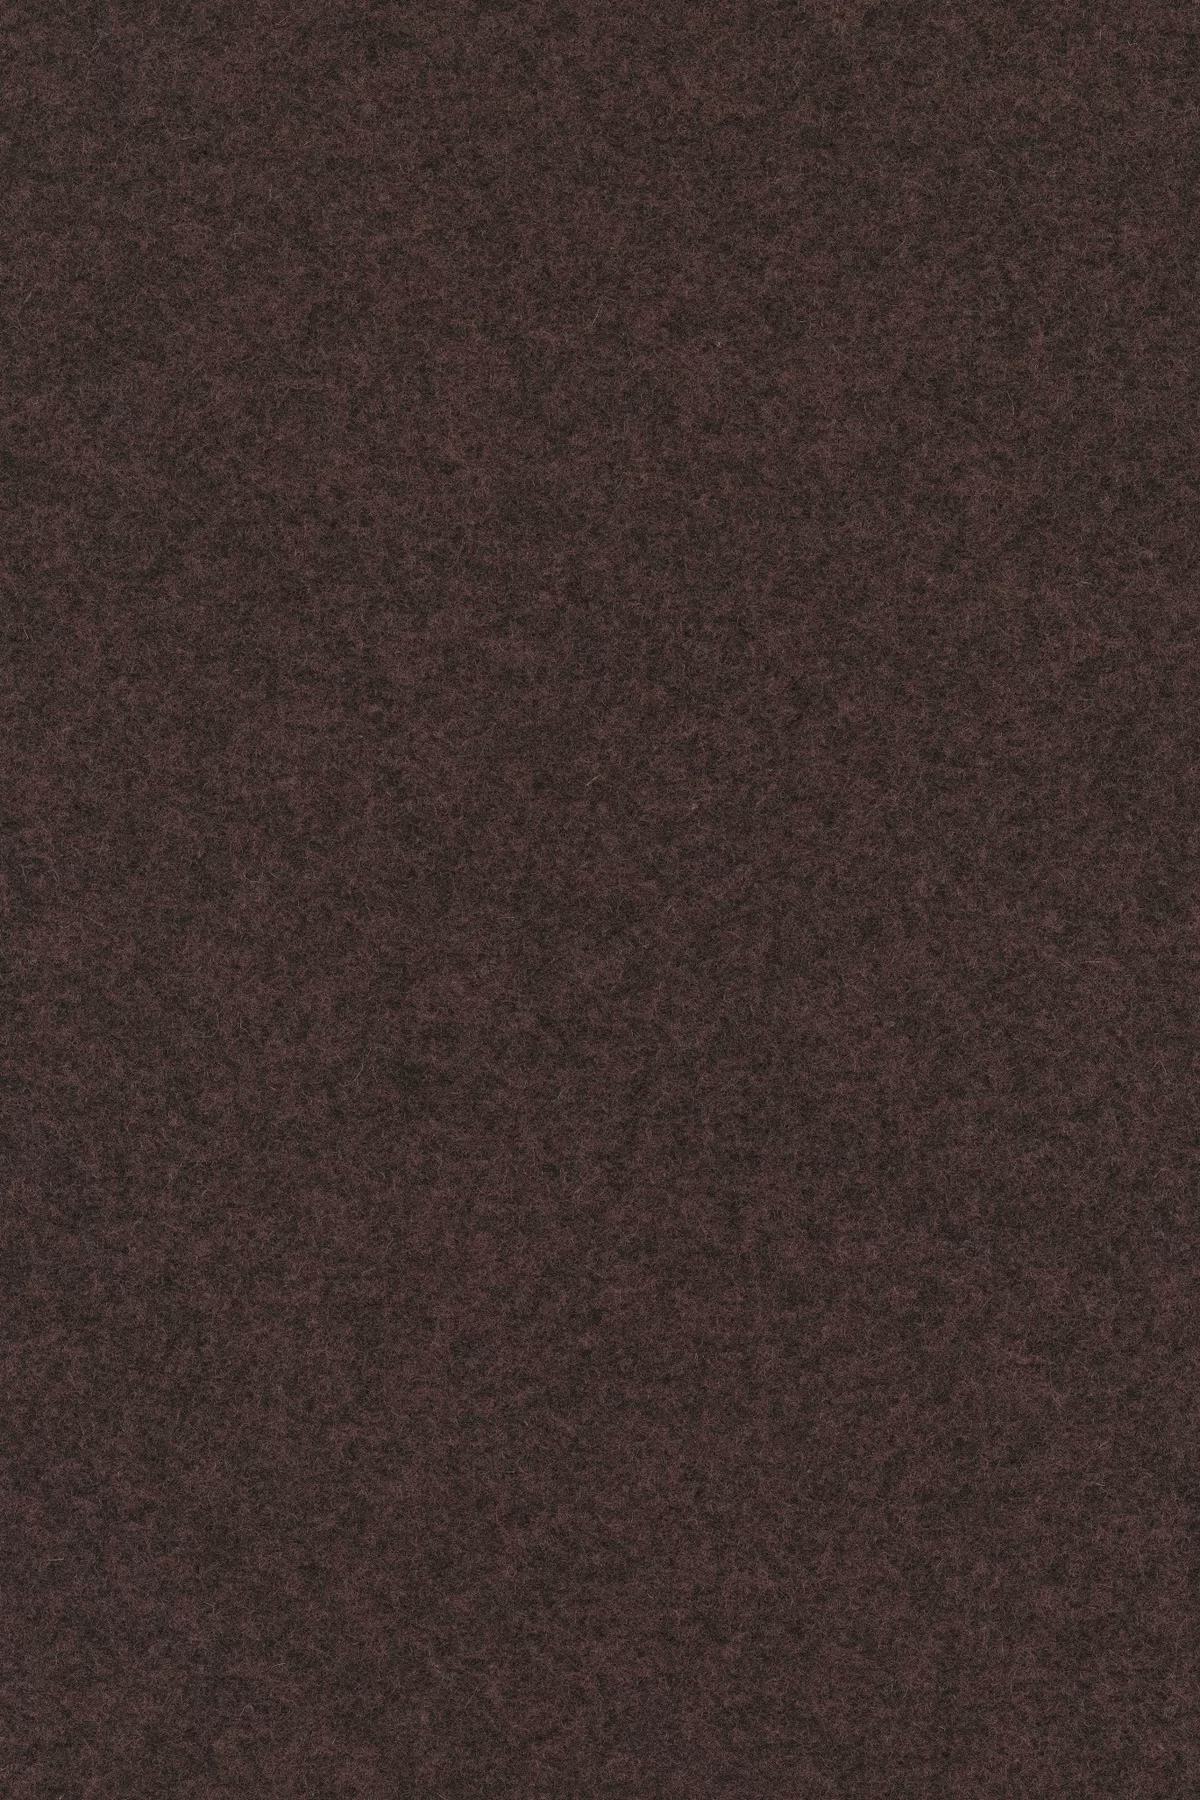 Fabric sample Divina Melange 3 677 brown